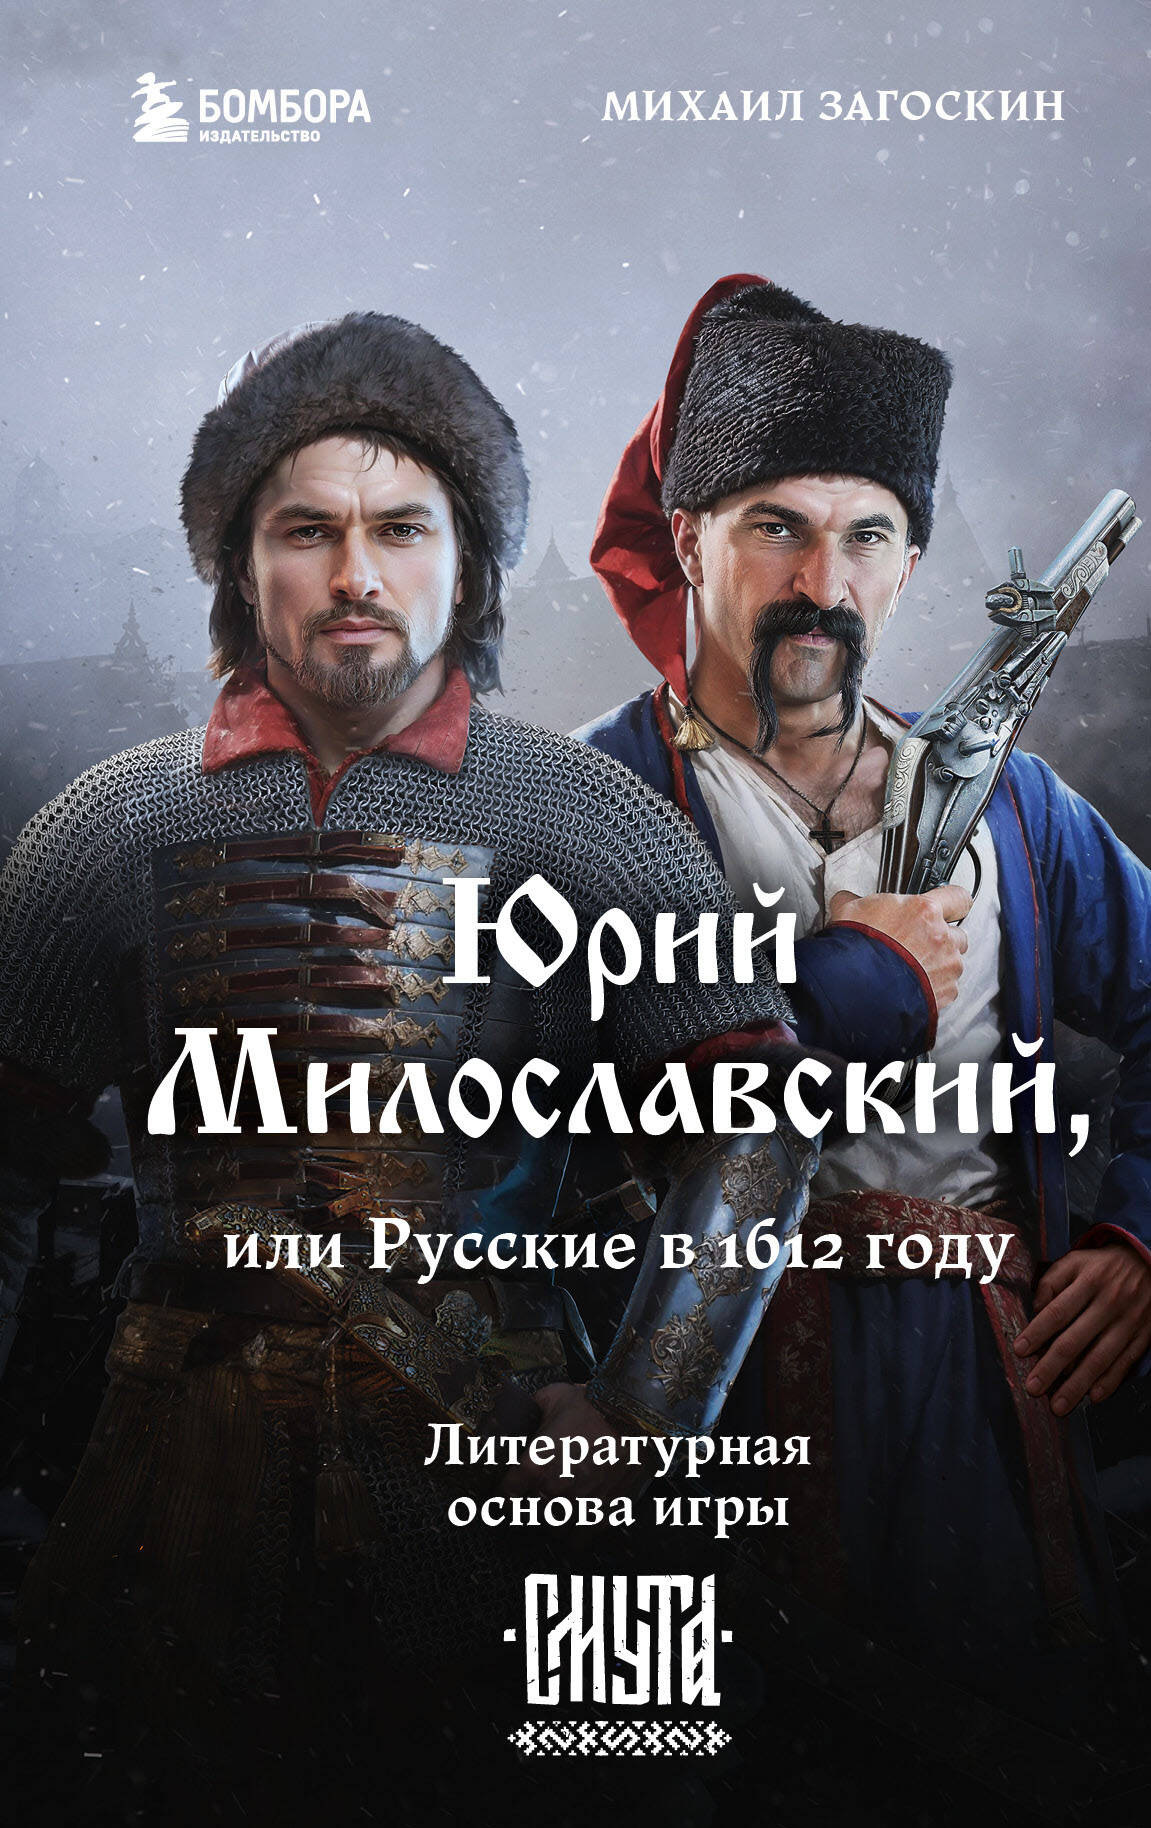 Юрий Милославский, или Русские в 1612 году загоскин михаил николаевич юрий милославский или русские в 1612 году романы